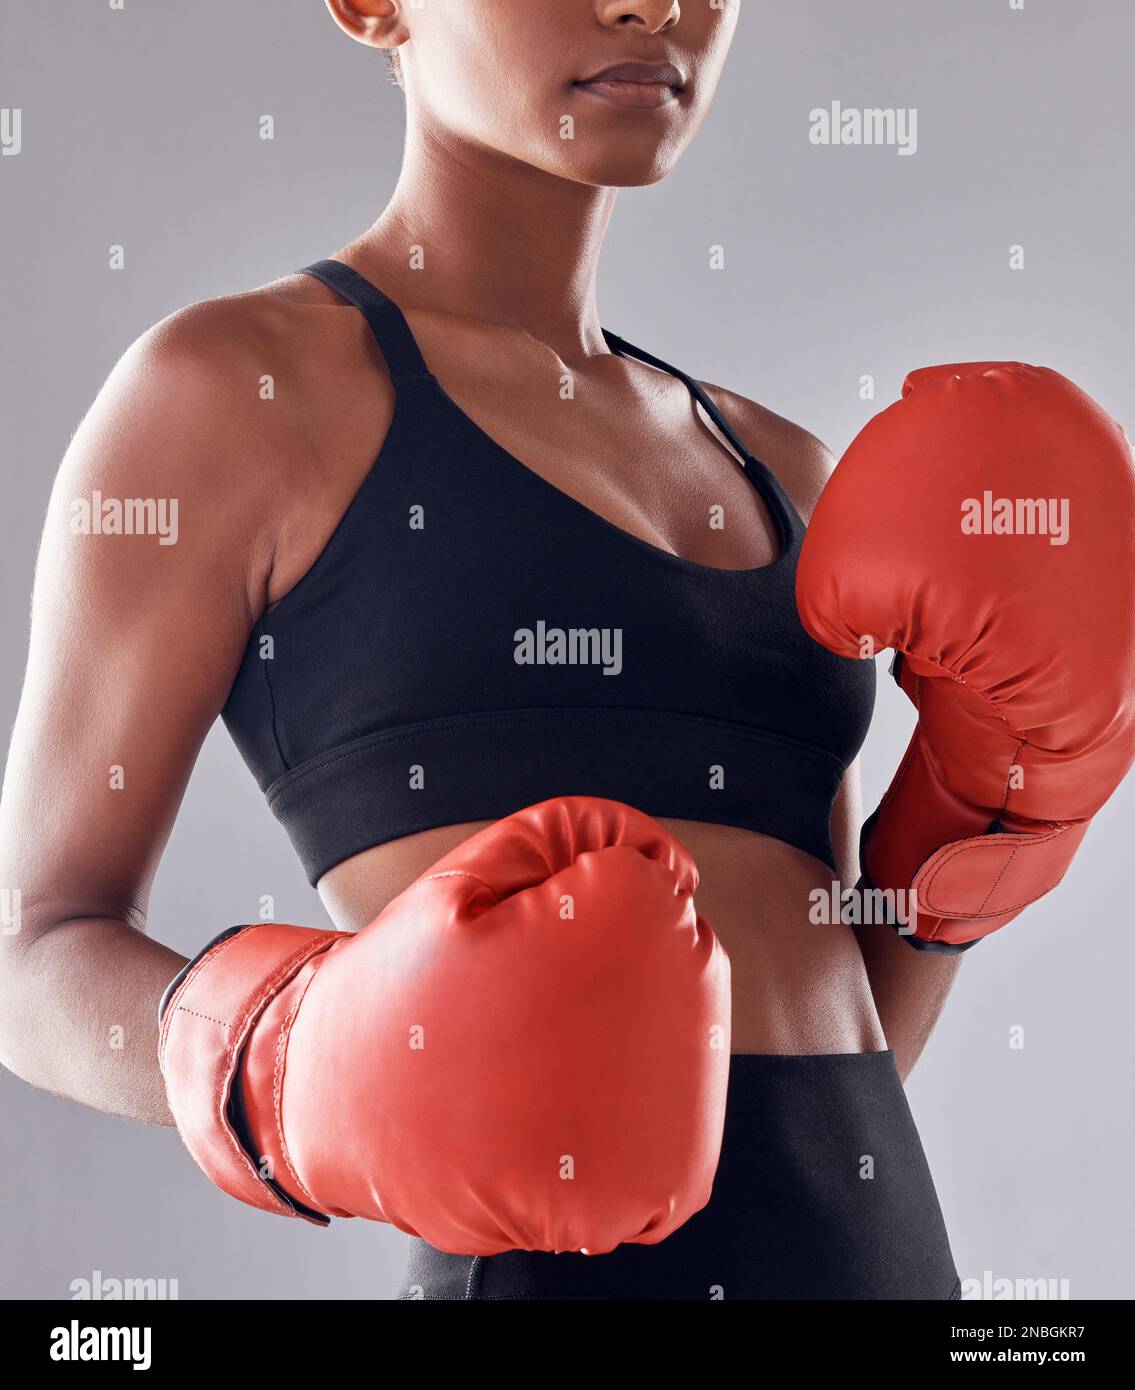 Boxeo, guantes de fitness y mujer en estudio para el ejercicio deportivo, músculo fuerte o entrenamiento mma. Boxeador femenino, entrenamiento y puño lucha por el impacto, la energía Foto de stock